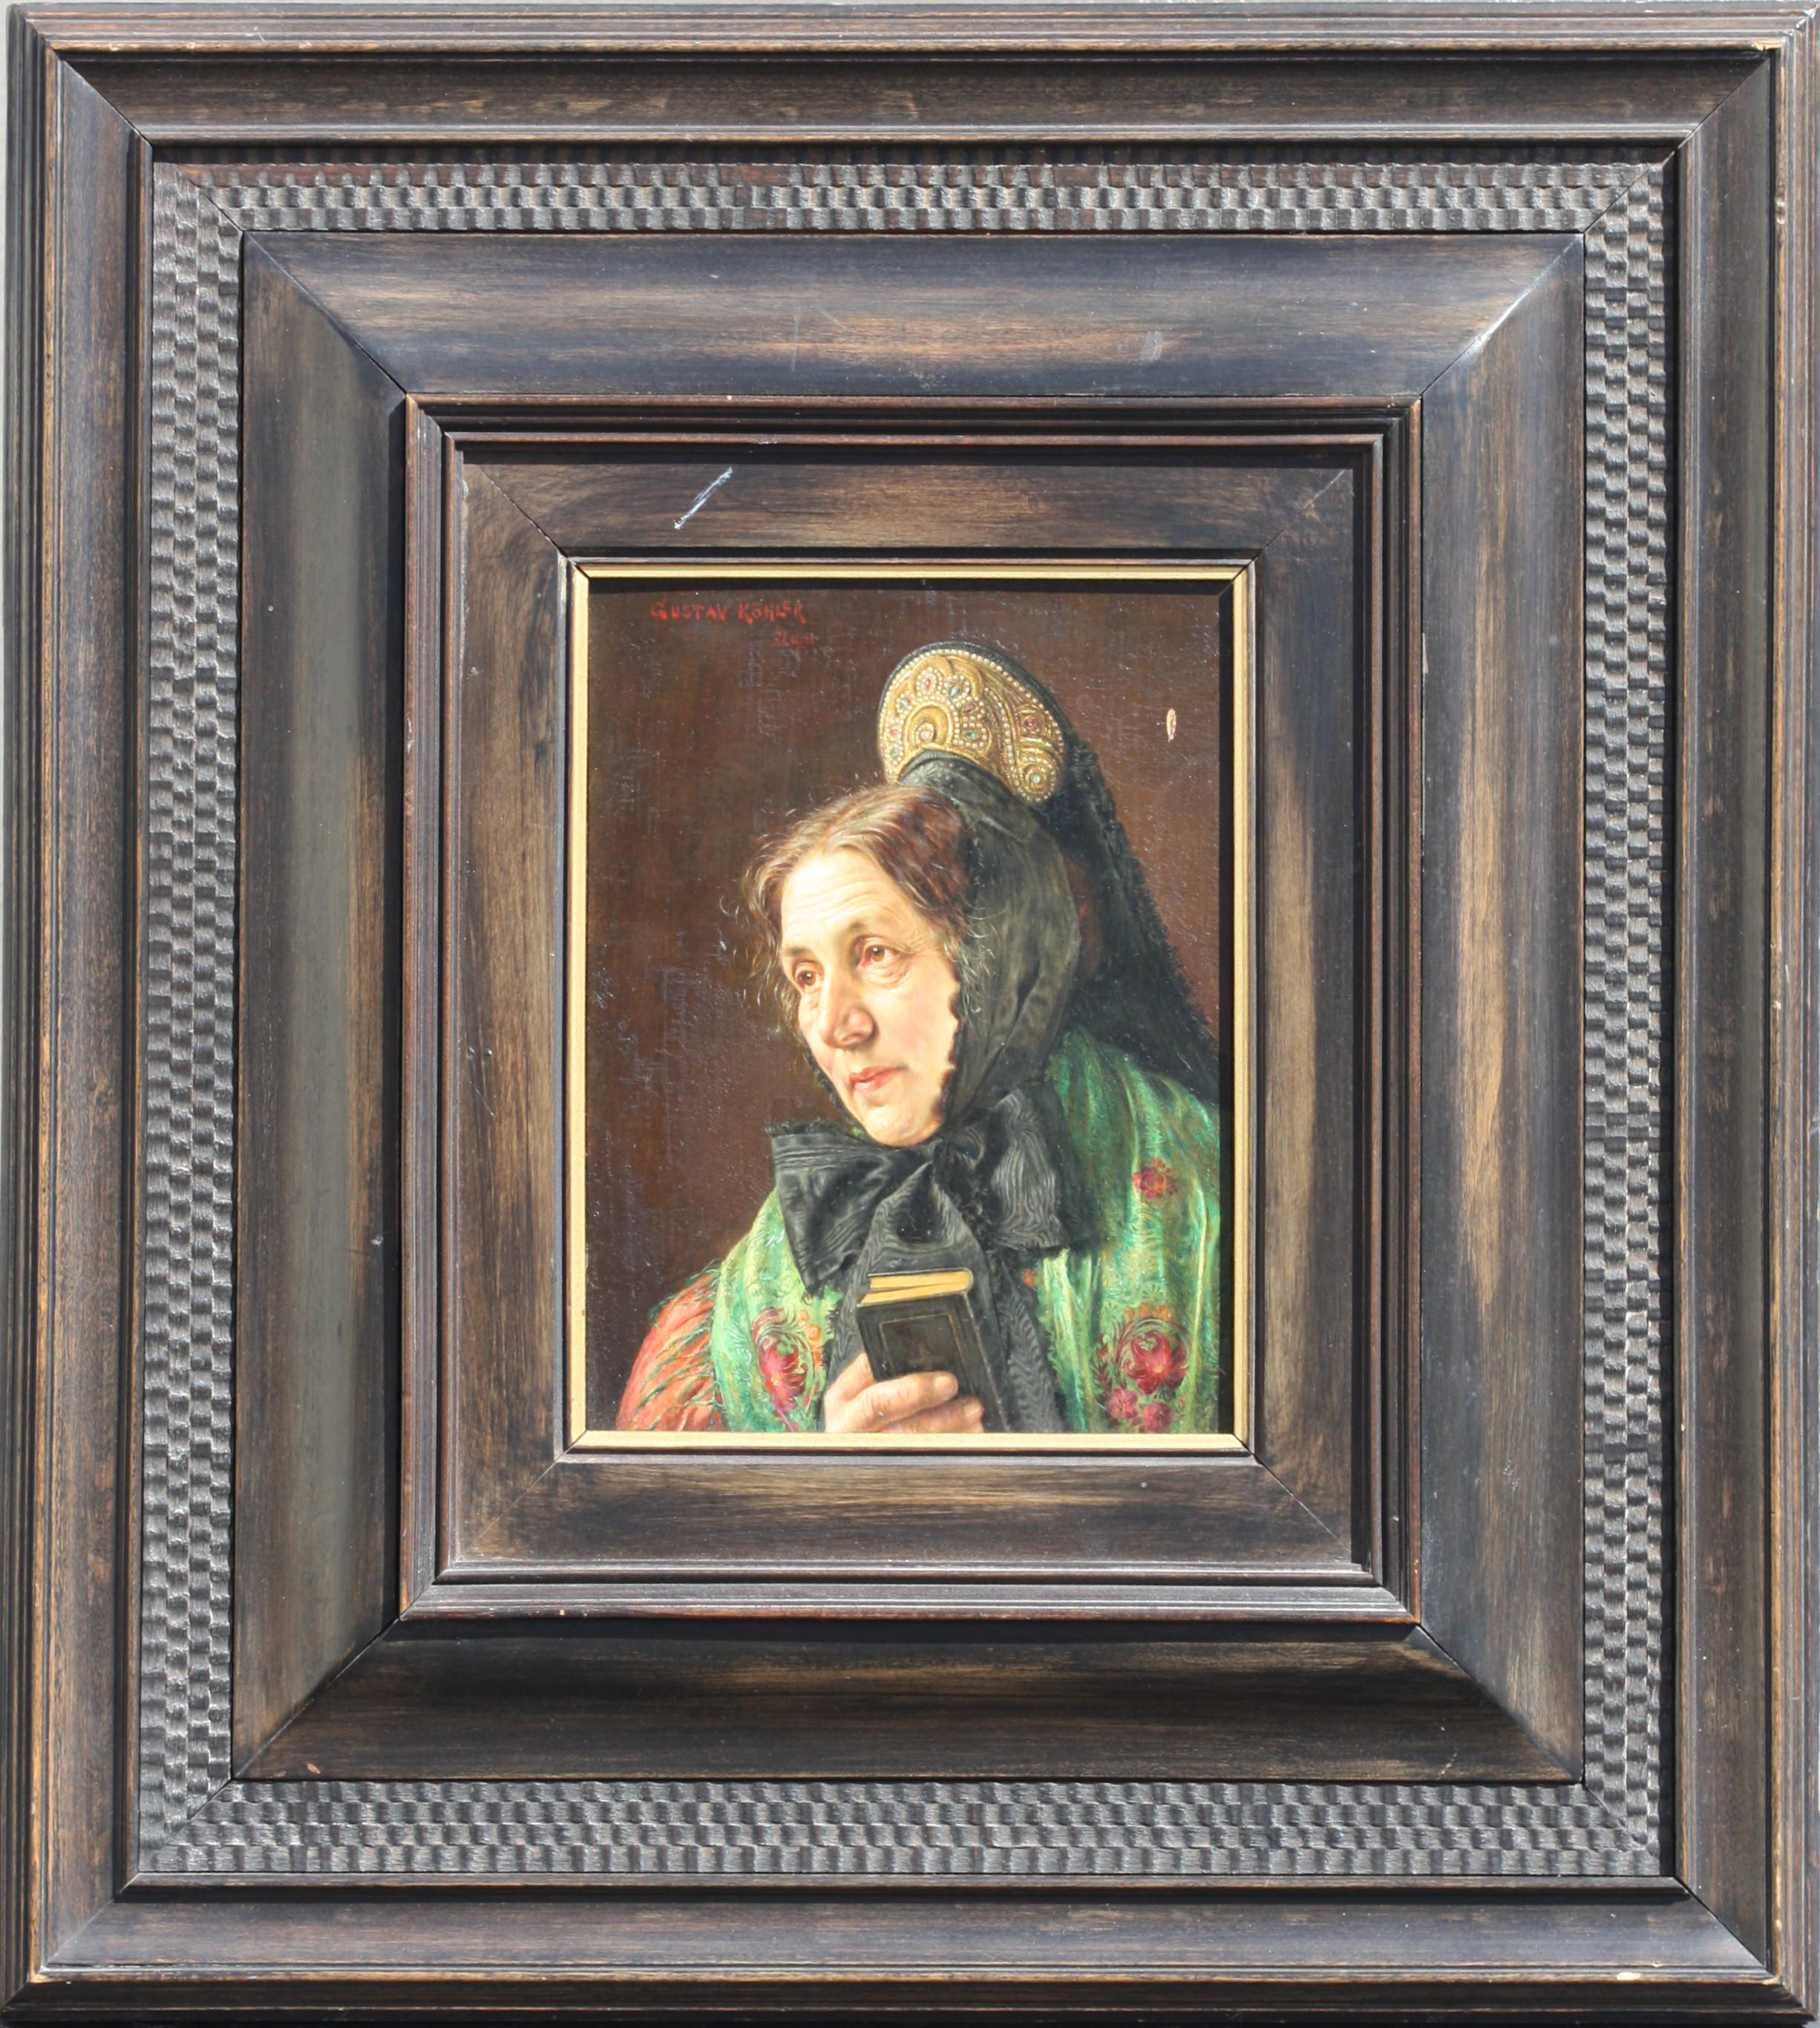 Gustav KOHLER (1859-1932)
Oil on Board
Portrait of A Lady 
Signed upper left Gustav Kohler
Size without frame:
8 x 6 in. (20.32 x 15.24 cm.) 
Size with frame:
18.25 x 16.5 in. (46.35 x 41.91 cm.)
Provenance:
Stark Museum of Art.